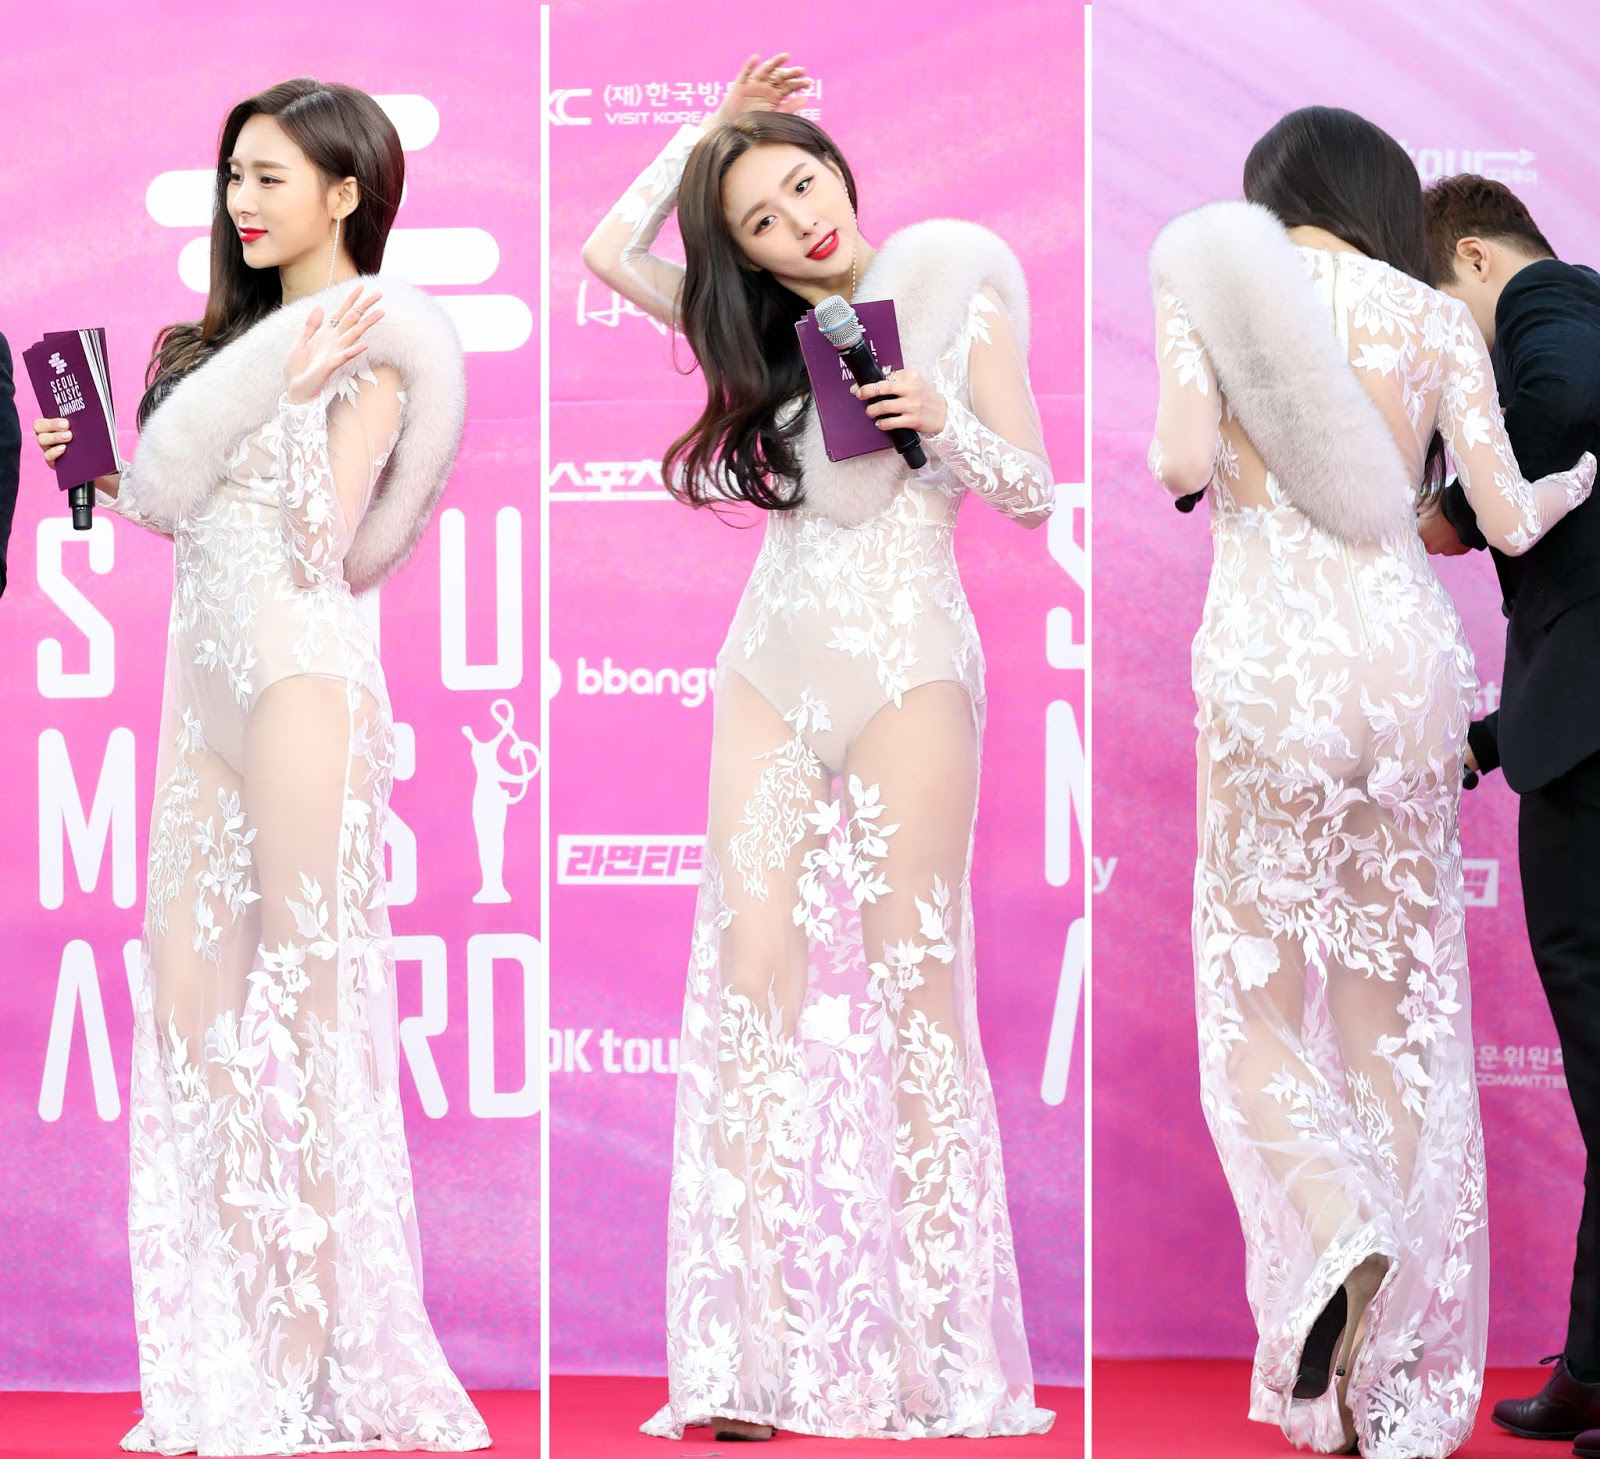 7 lần sao Hàn nhận gạch đá vì mặc hở: Jennie có thù với miniskirt, Jessi thách thức người xem, Lee Sung Kyung dính tai nạn nội y - Ảnh 3.